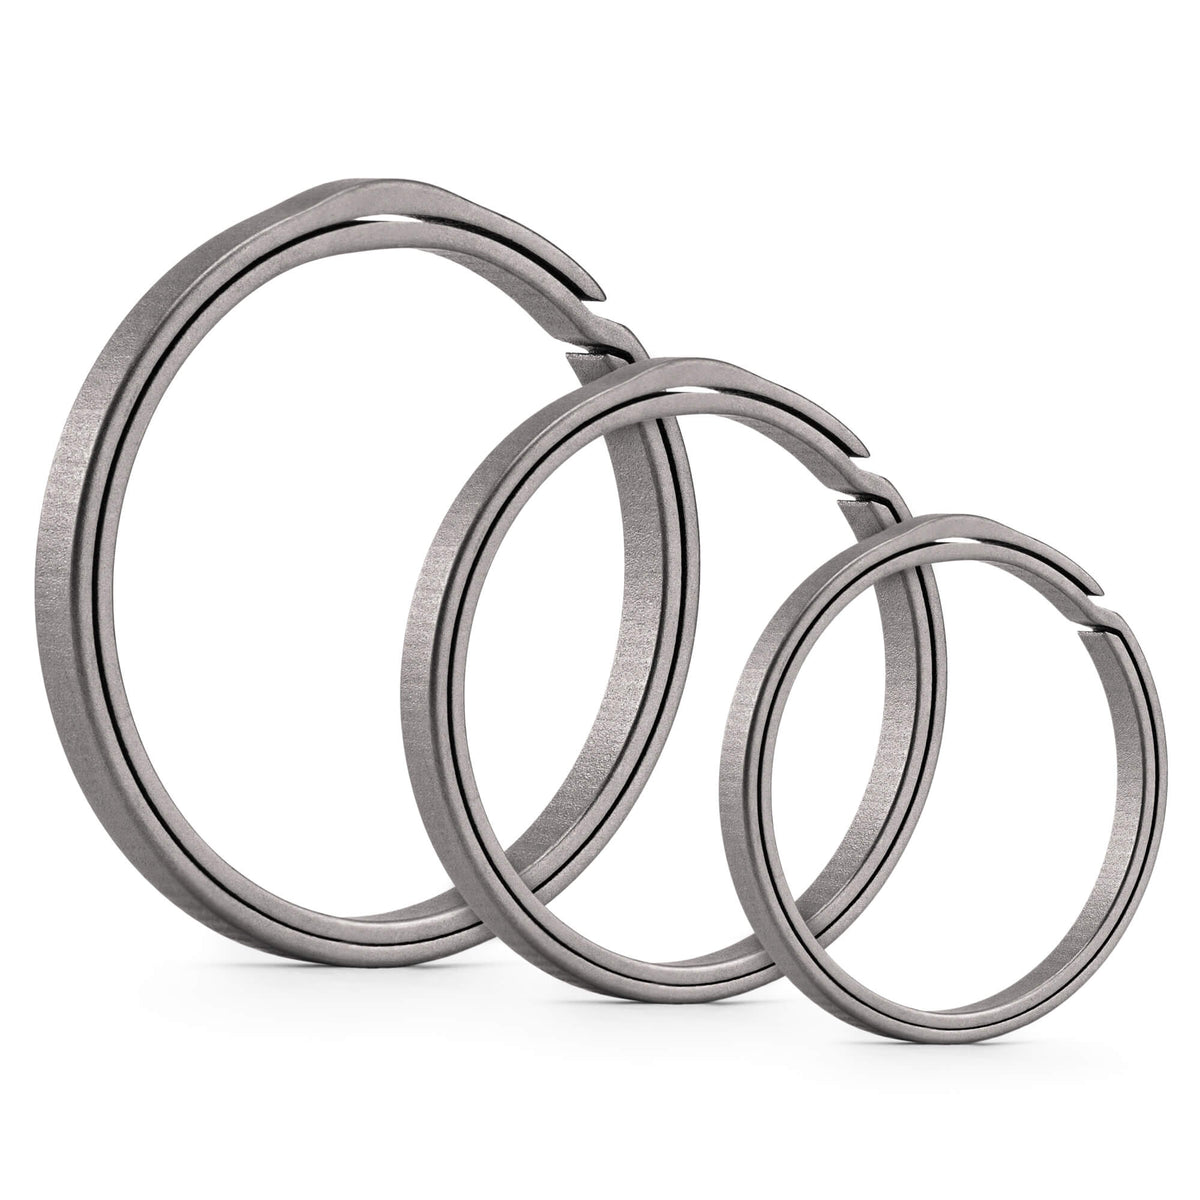 KA19 Titanium Alloy Key Ring Set